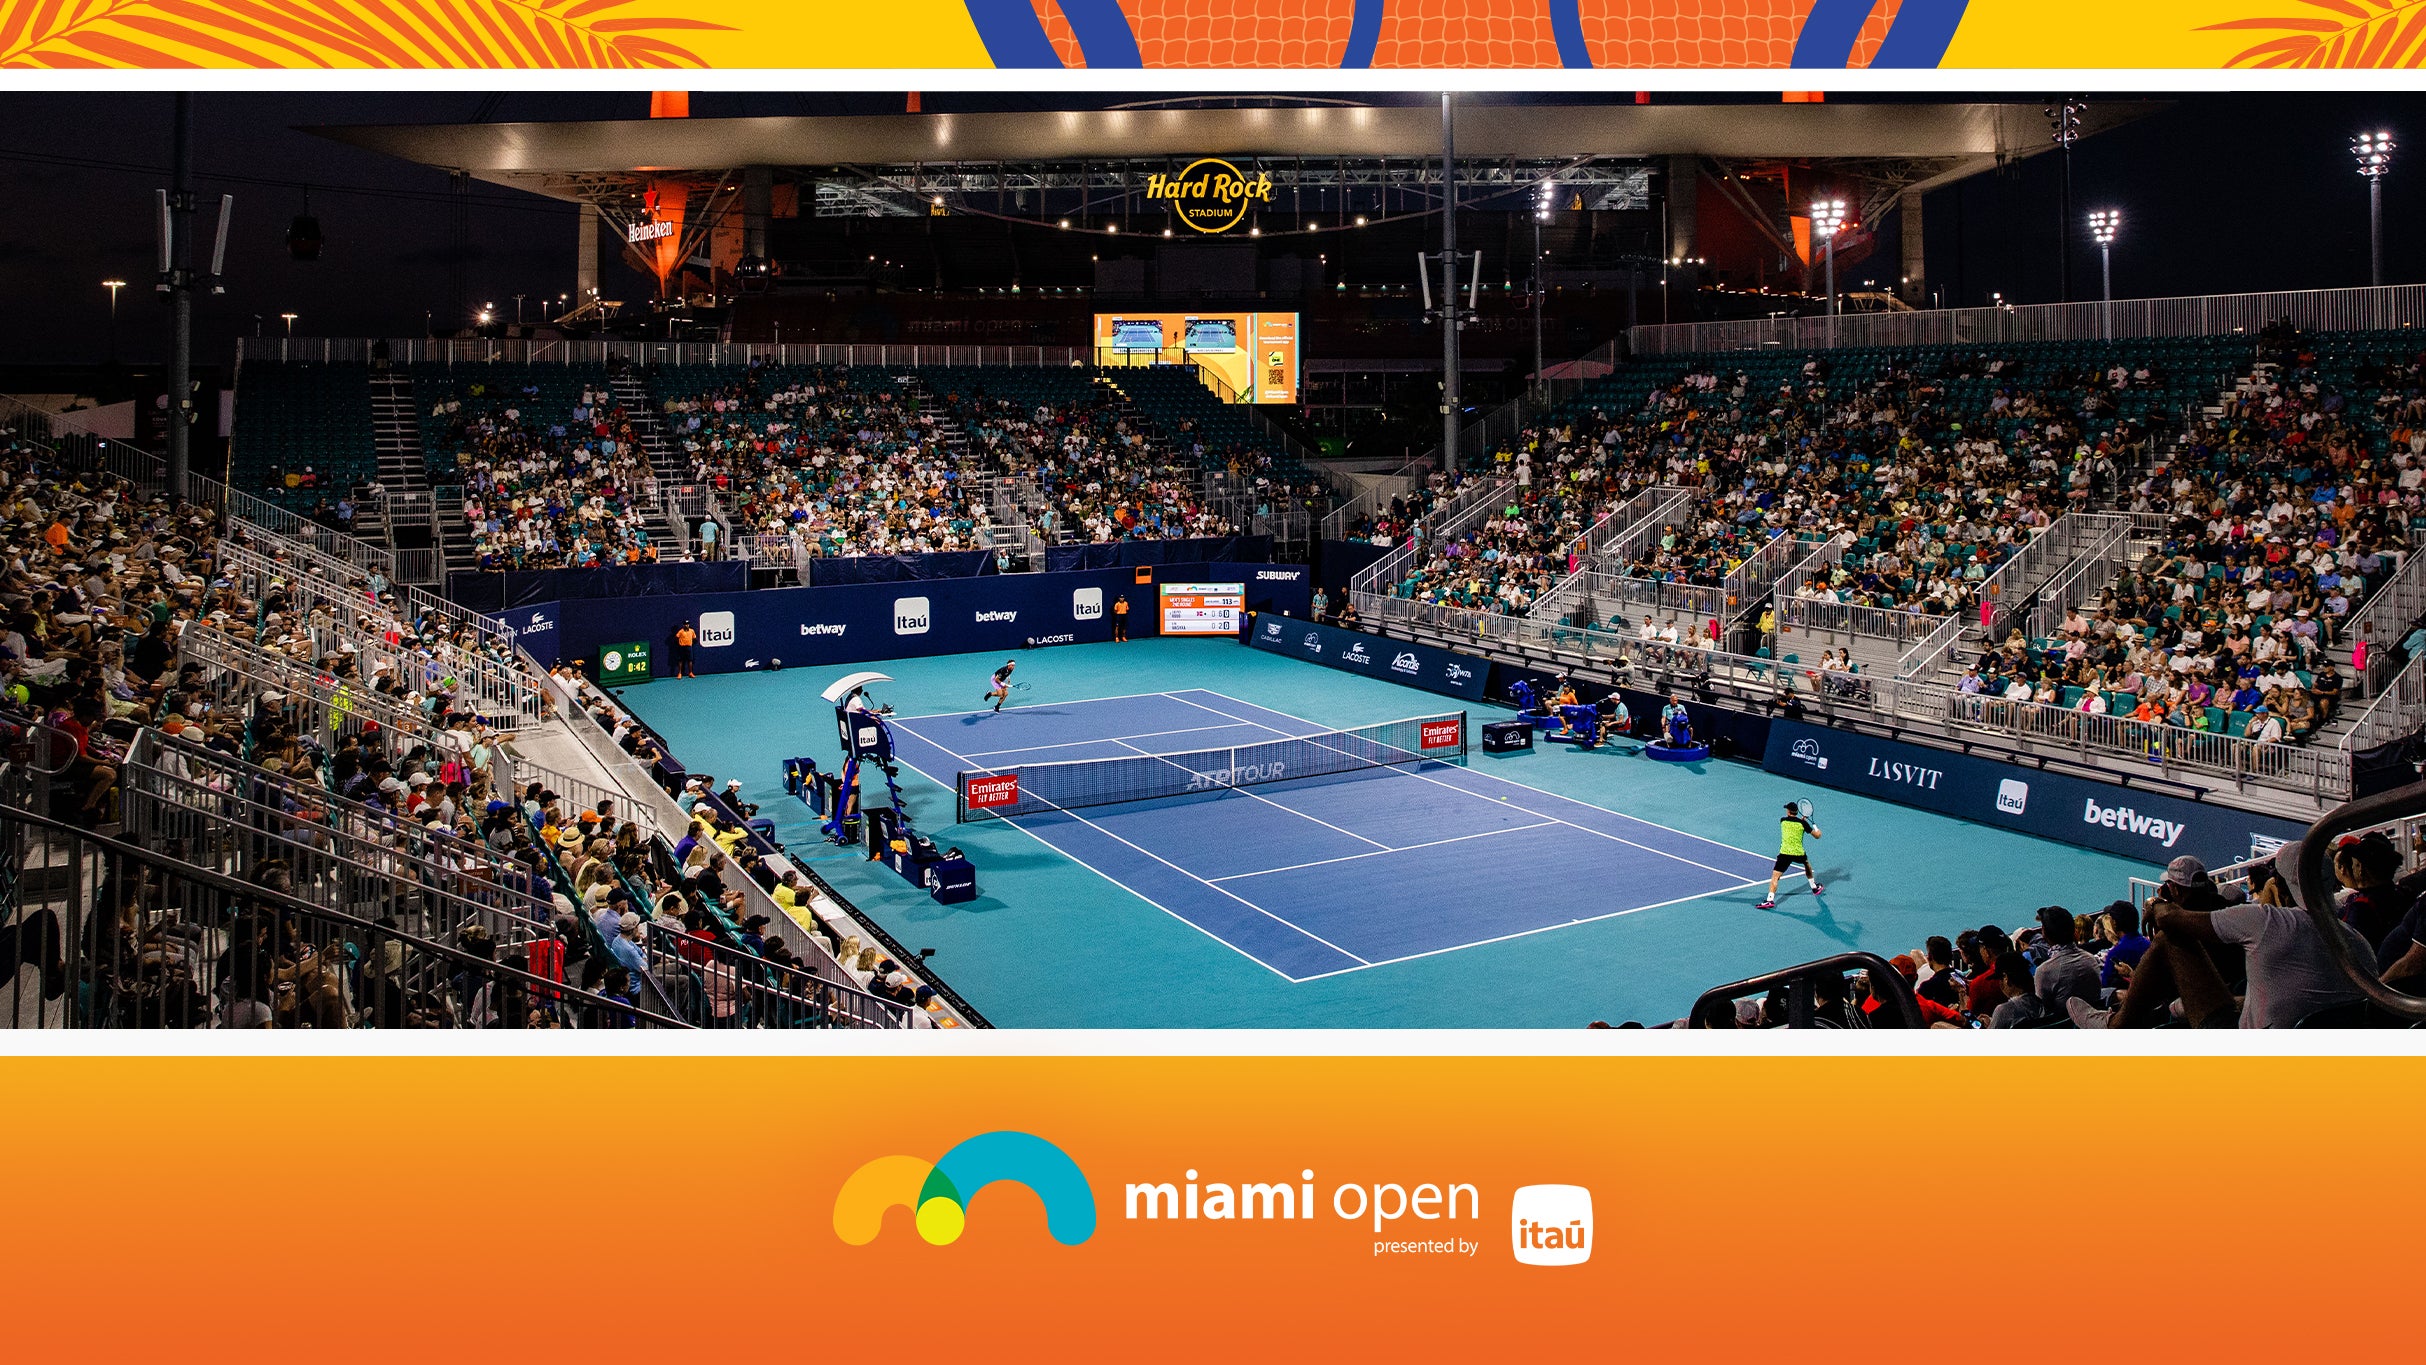 Miami Open - Grandstand Session 7 in Miami promo photo for Miami Open presale offer code